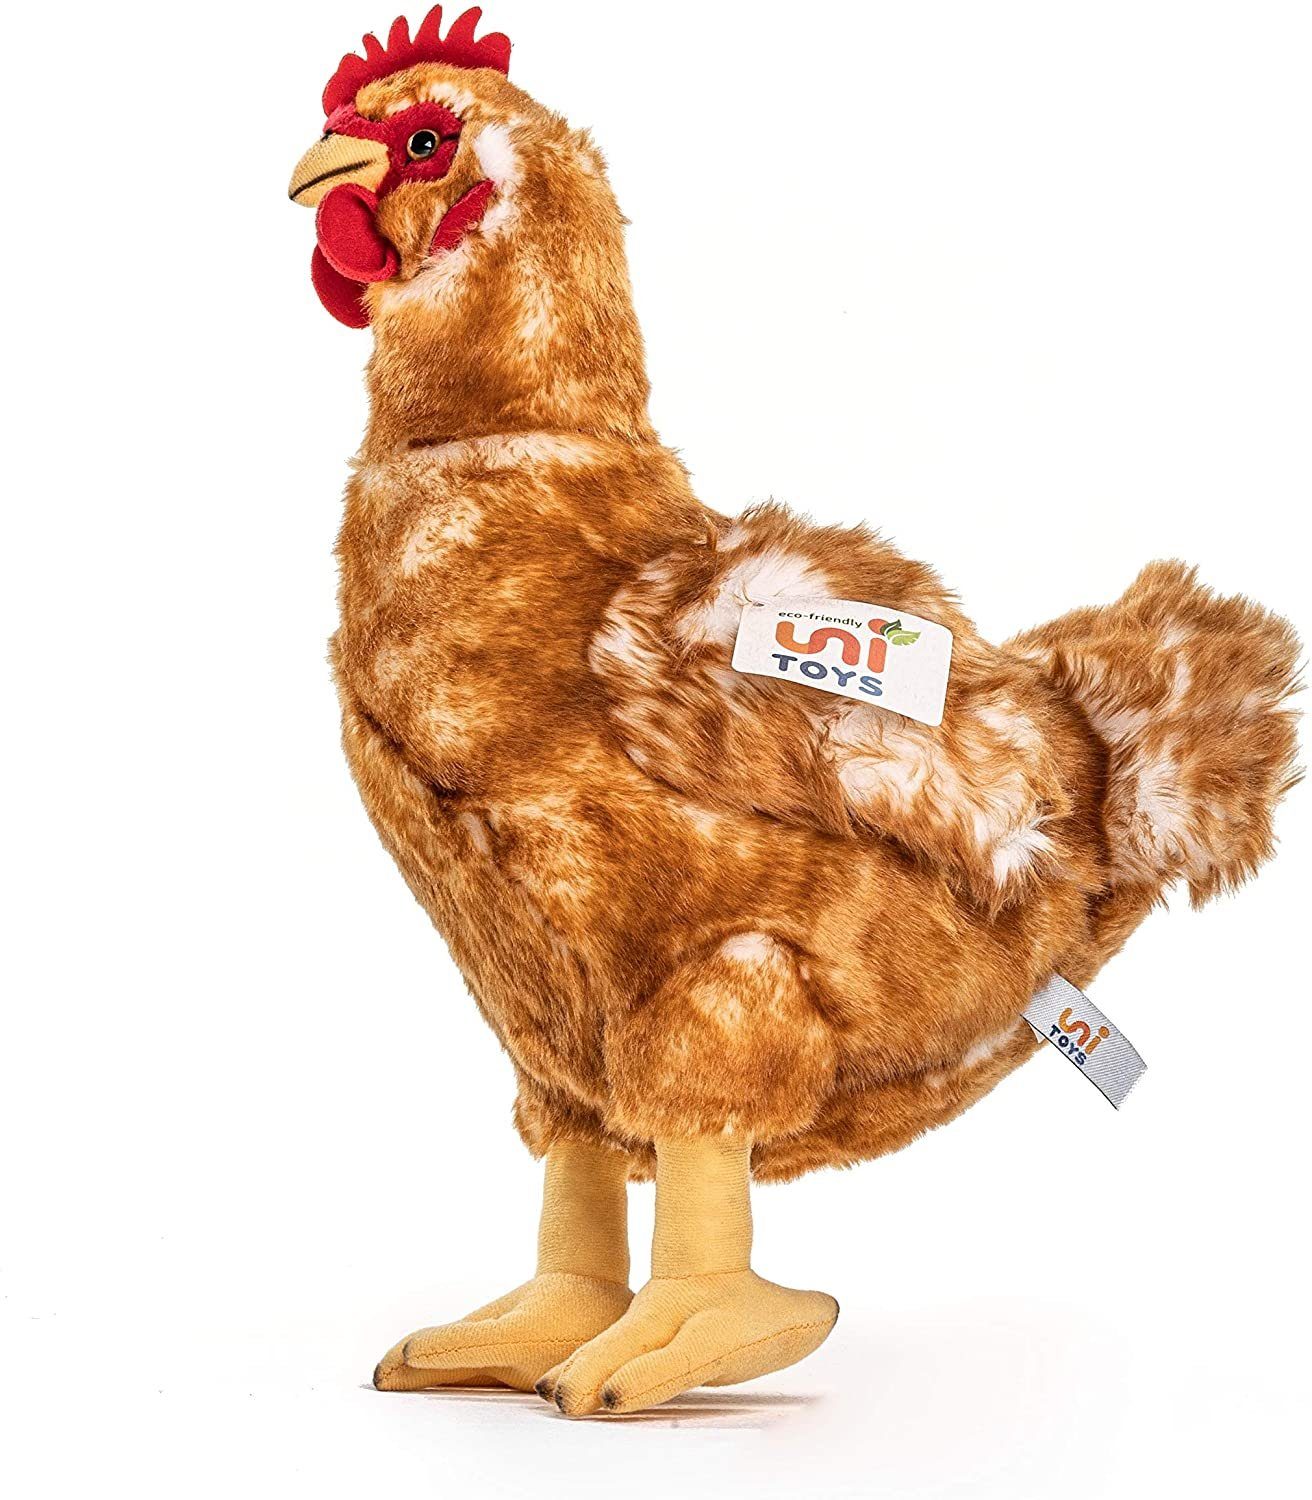 Uni-Toys Kuscheltier Henne braun - 37 cm (Höhe) - Plüsch-Huhn, Vogel - Plüschtier, zu 100 % recyceltes Füllmaterial | Kuscheltiere